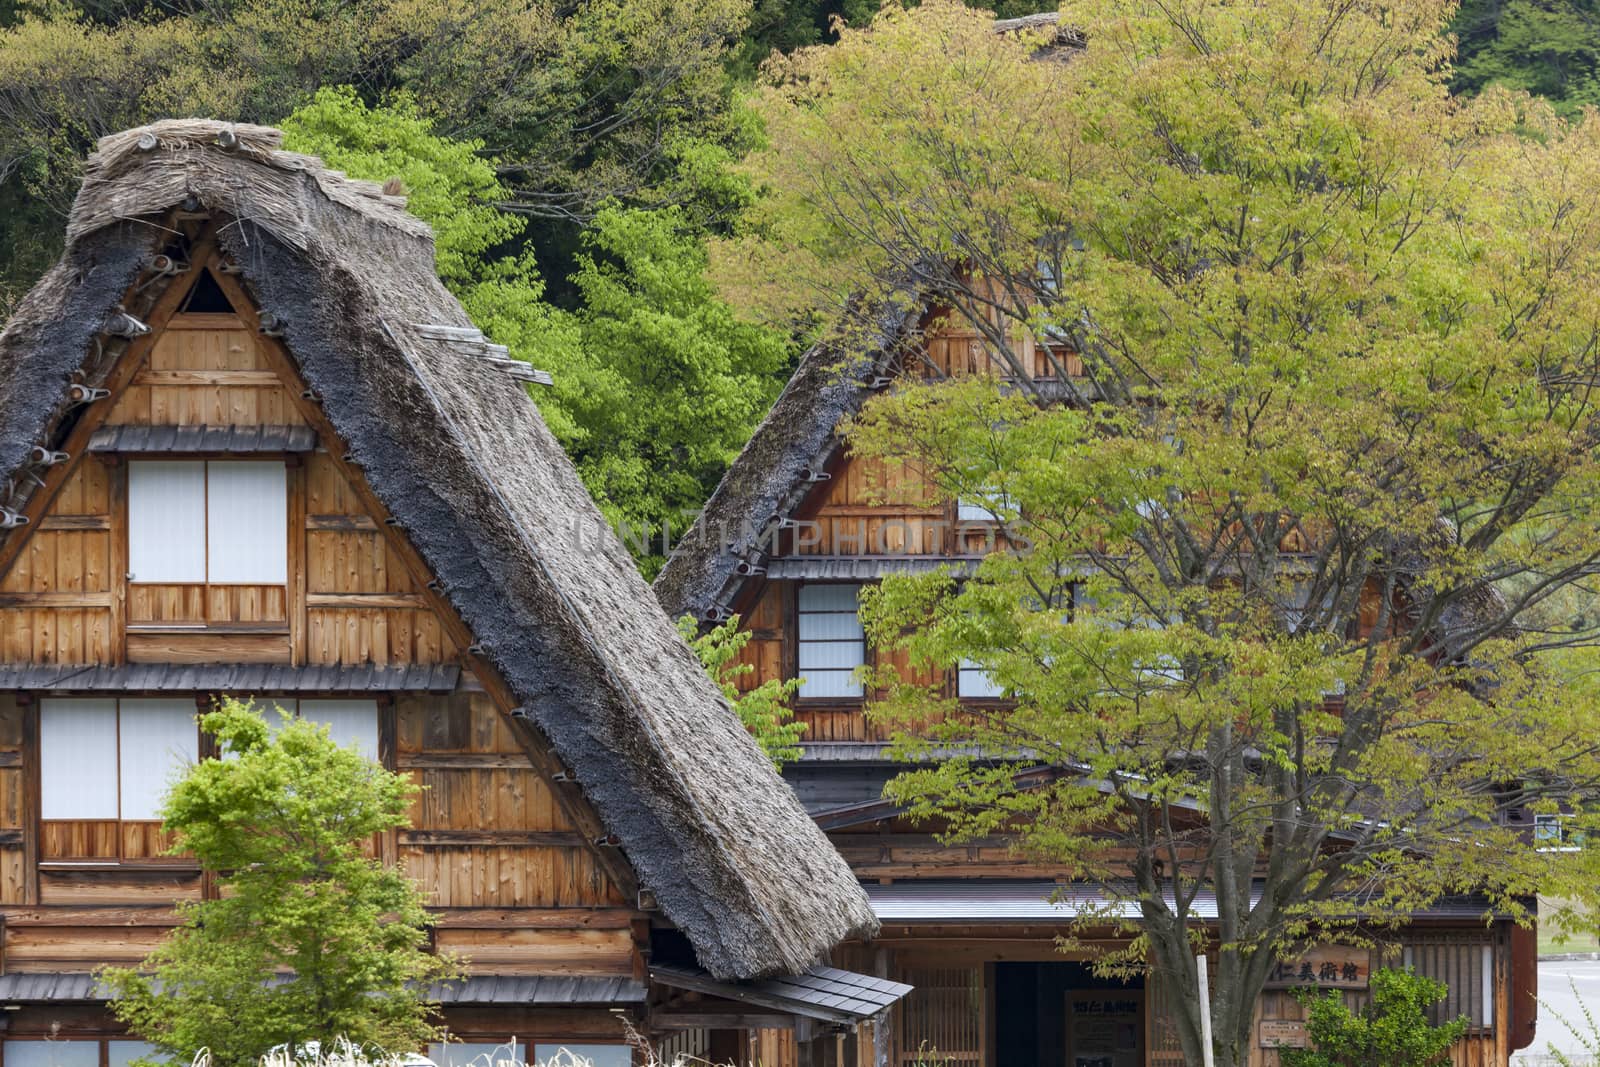 Traditional and Historical Japanese village Ogimachi - Shirakawa-go, Japan

